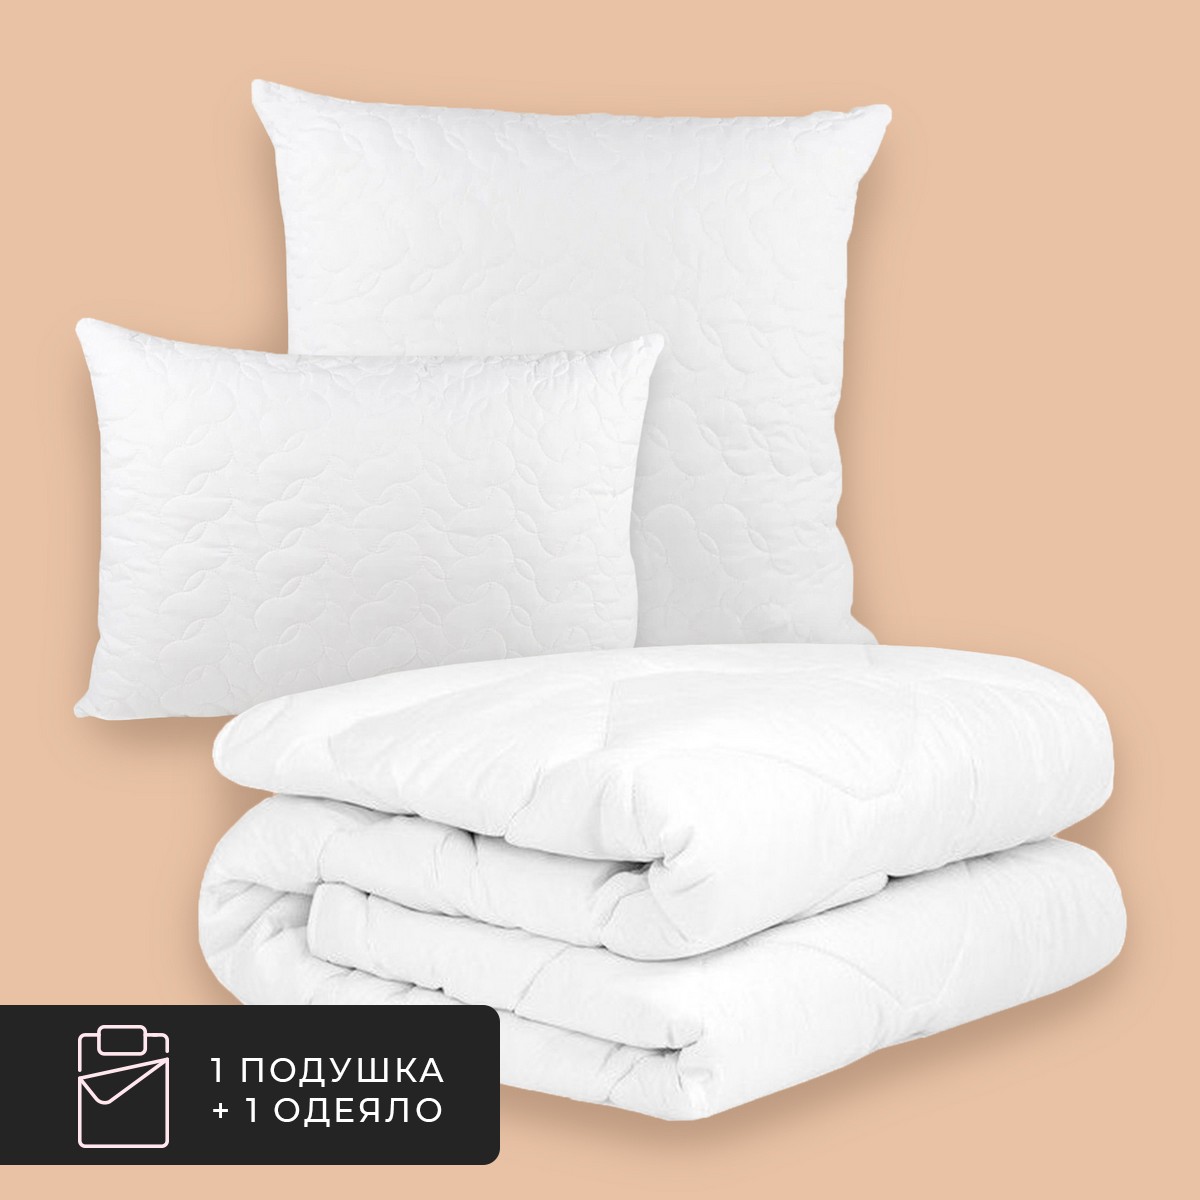 Набор 1 одеяло + 1 подушка Алоэ Вера, бамбуковое волокно в микрофибре (175х200, 50х70) Daily by T